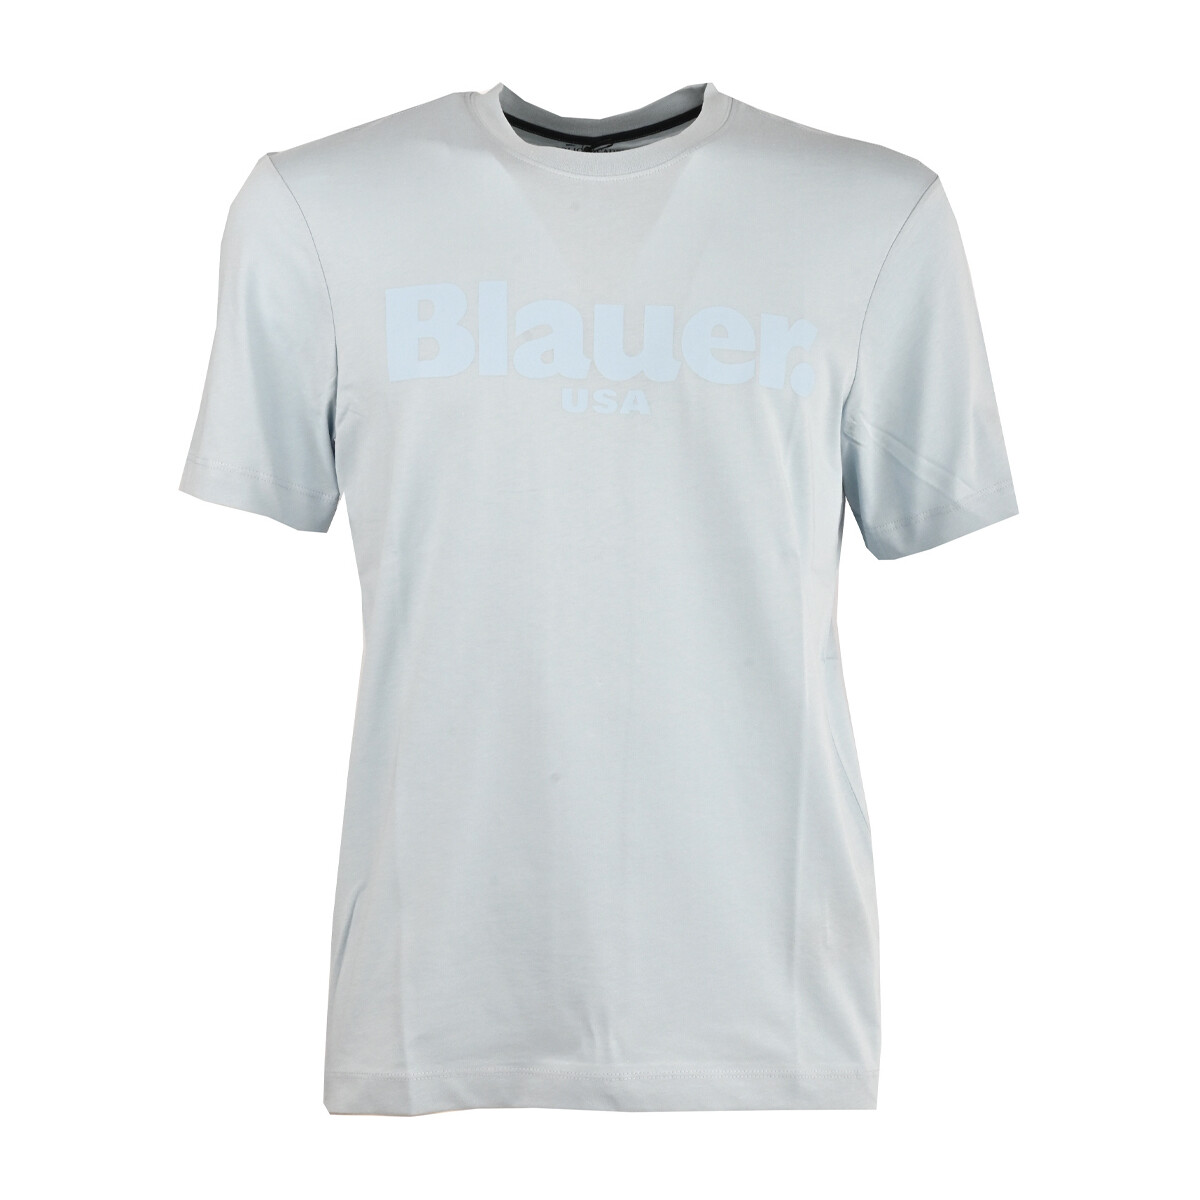 Vêtements Homme T-shirts manches courtes Blauer 23sbluh02094_004547-838 Bleu